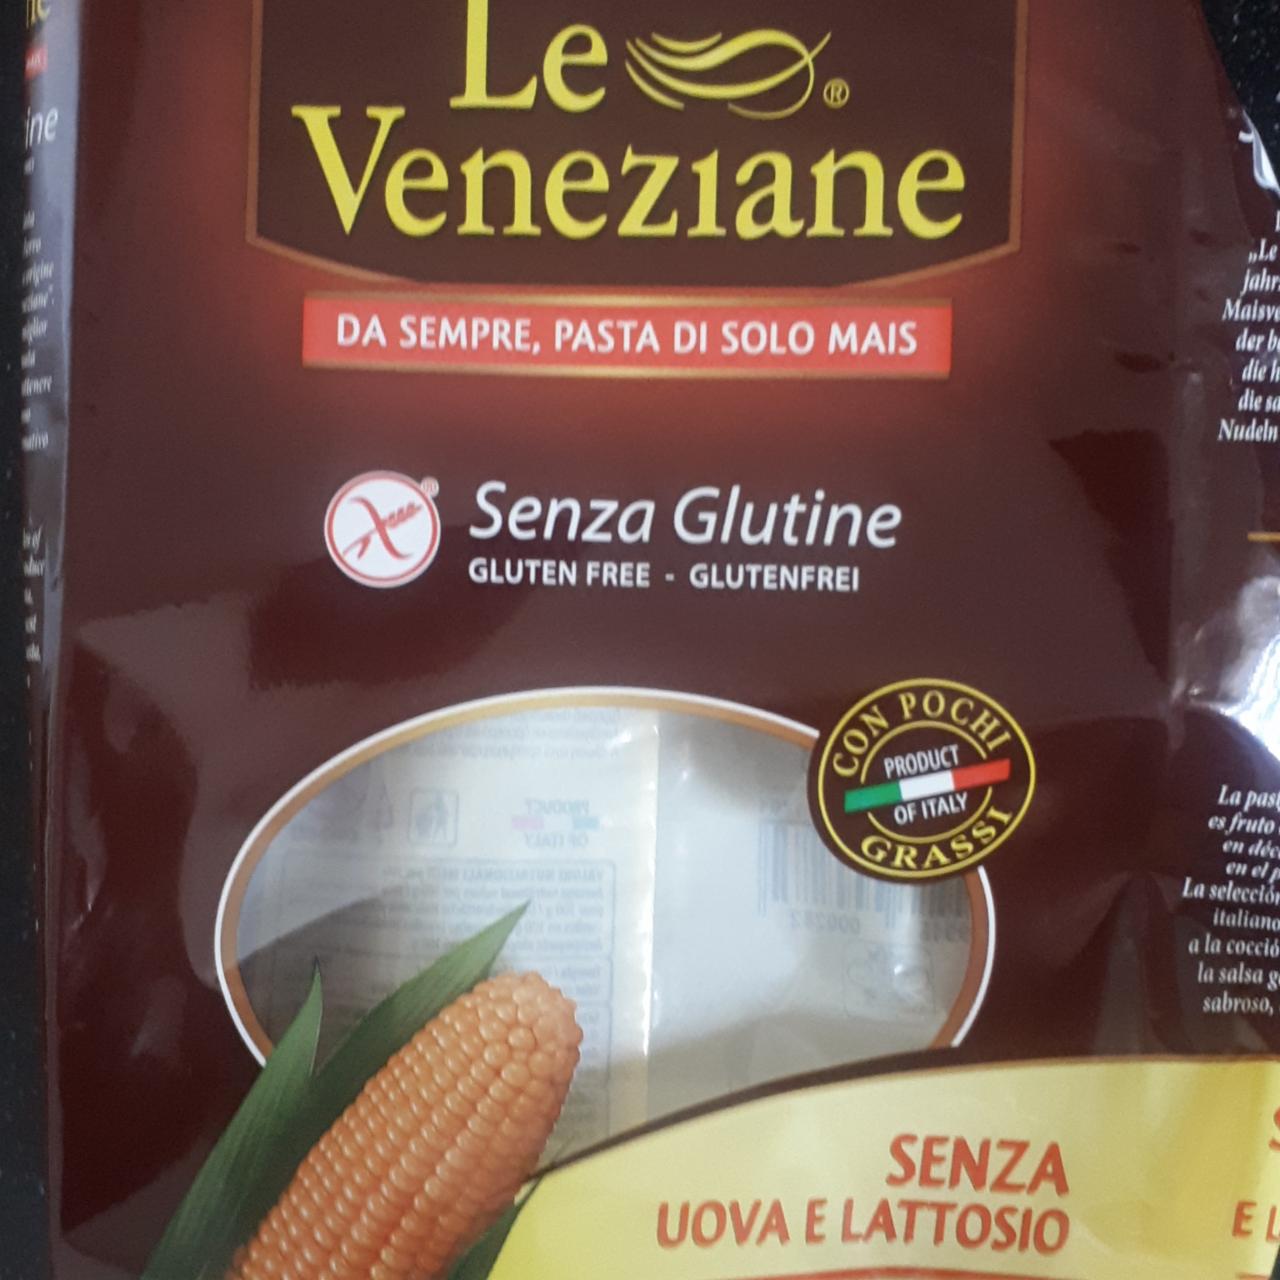 Fotografie - Sensa Glutine Glutenfrei Le Veneziane